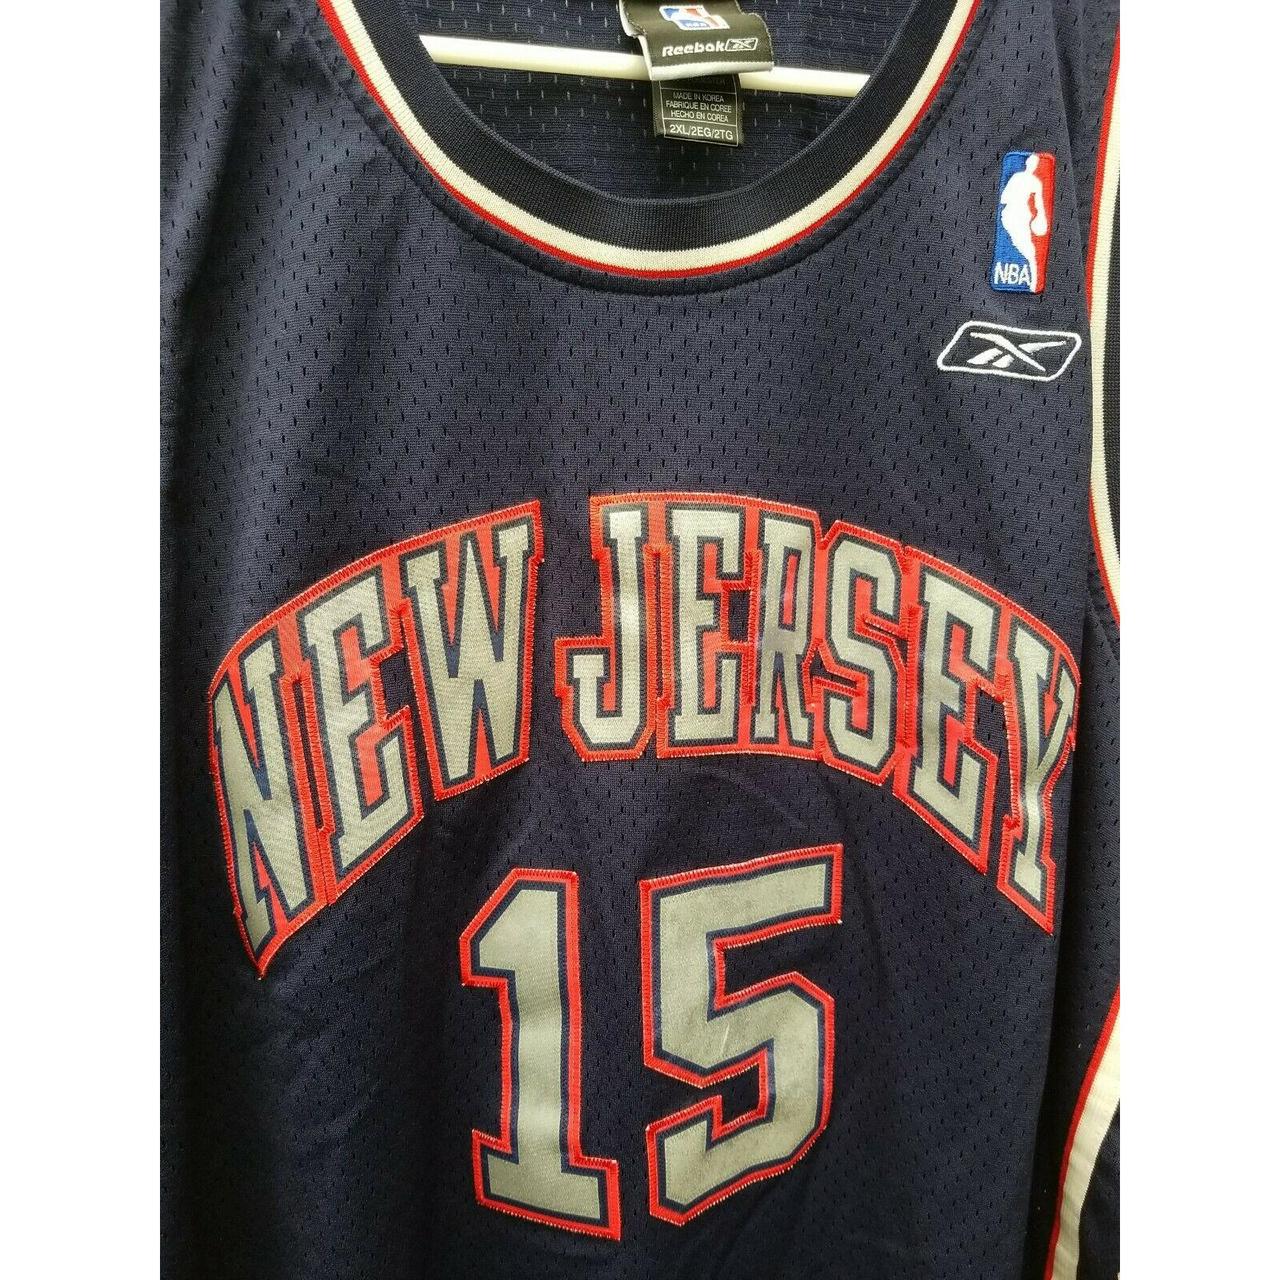 Vince Carter #15 New Jersey basketball jersey Great - Depop